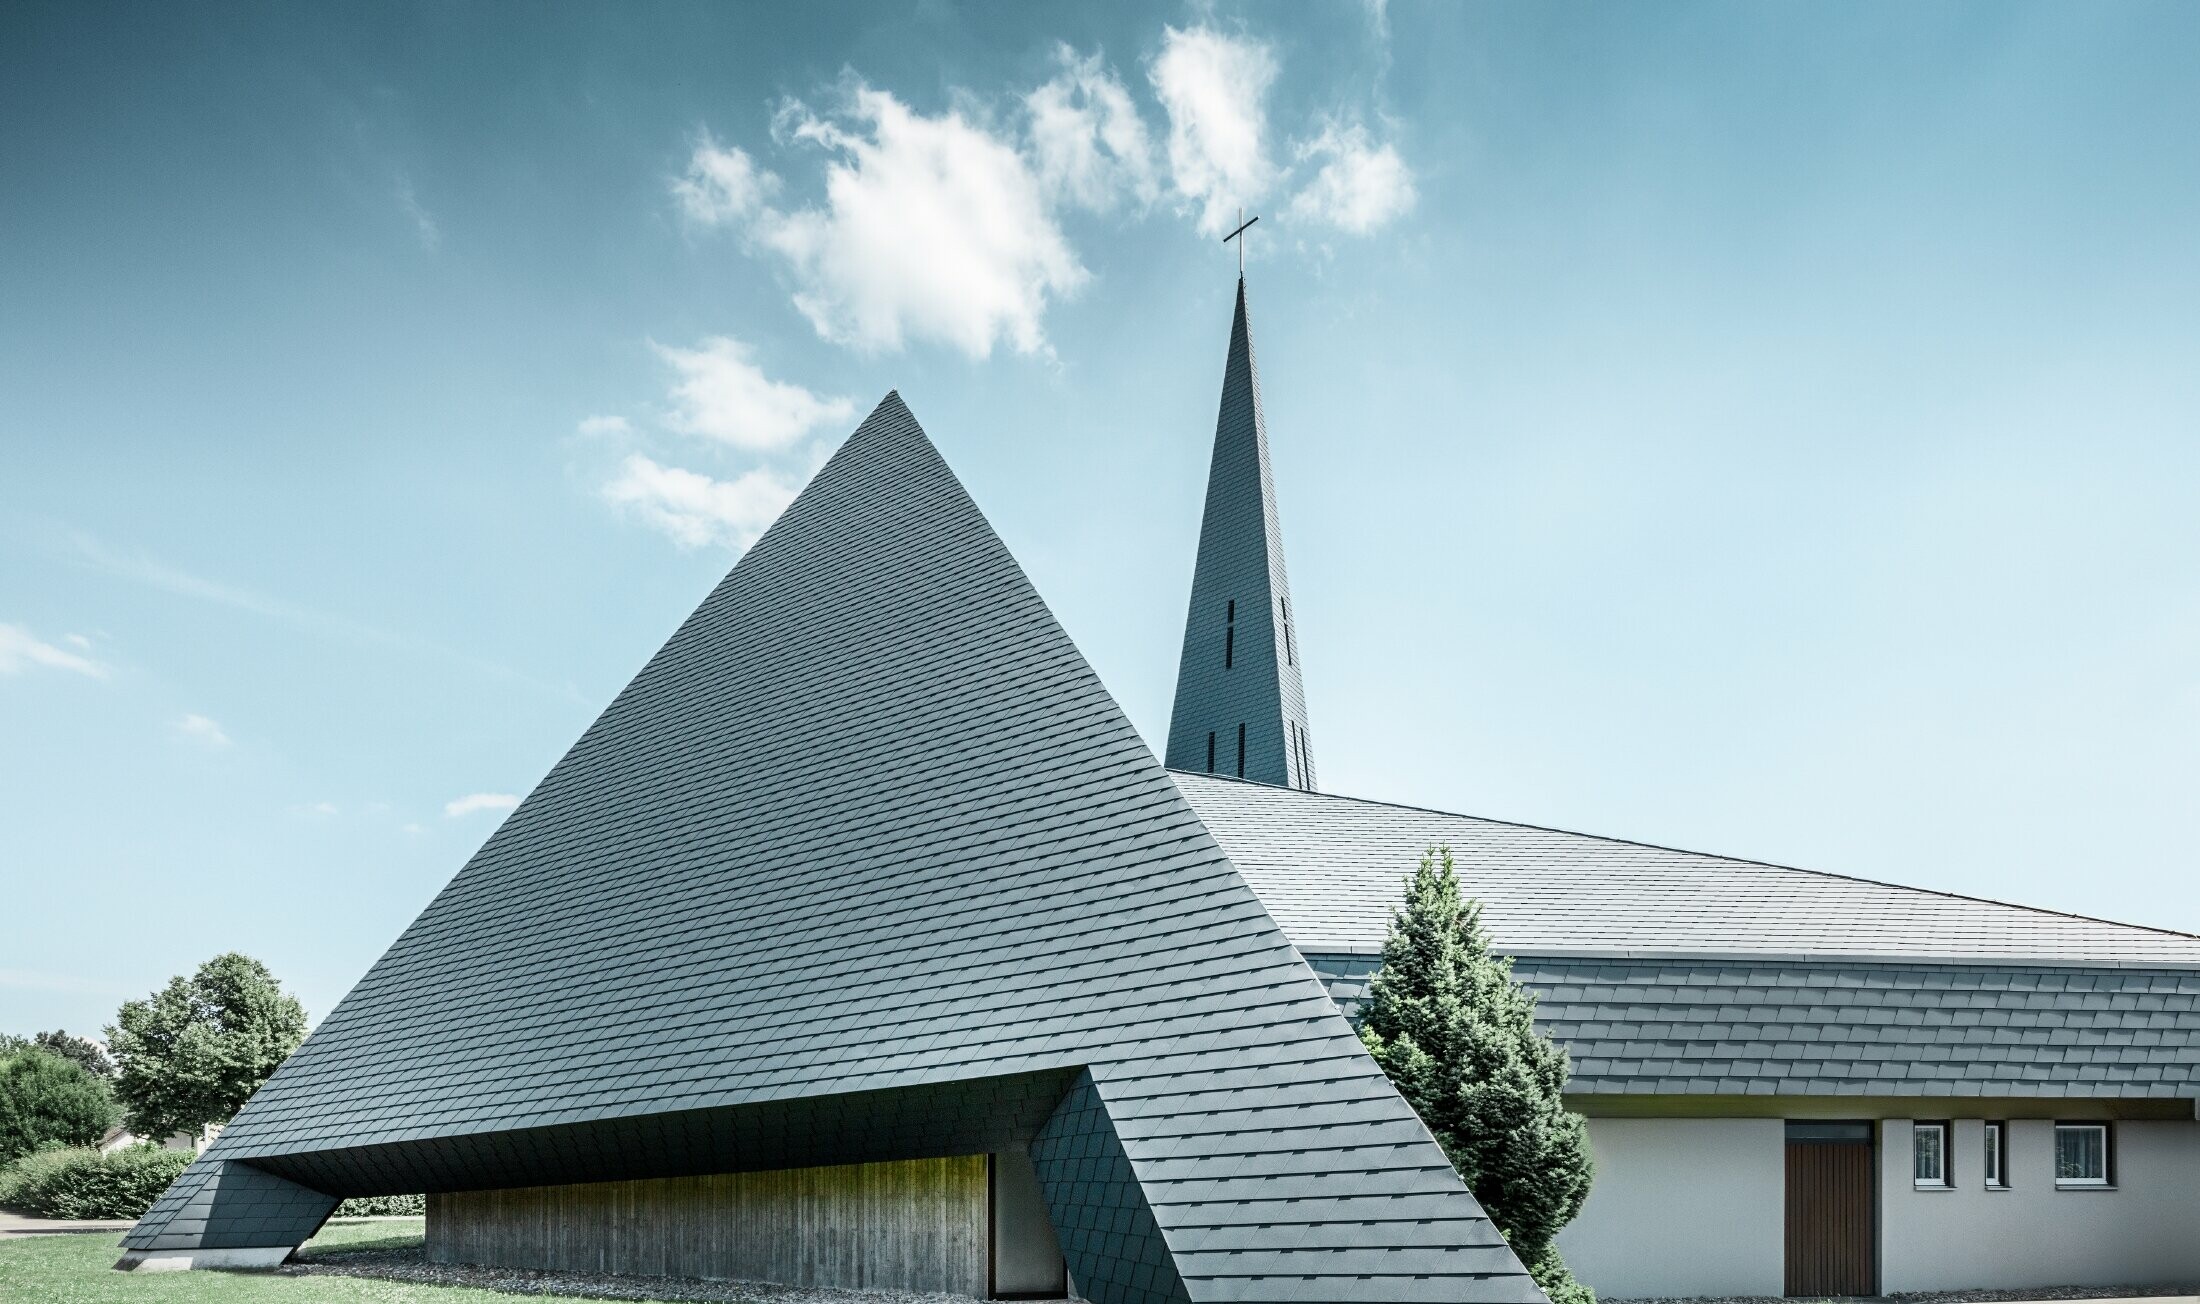 katholische Kirche in Langenau mit einem Design ähnlich einer Pyramide eingedeckt mit PREFA Aluminiumschindeln in anthrazit